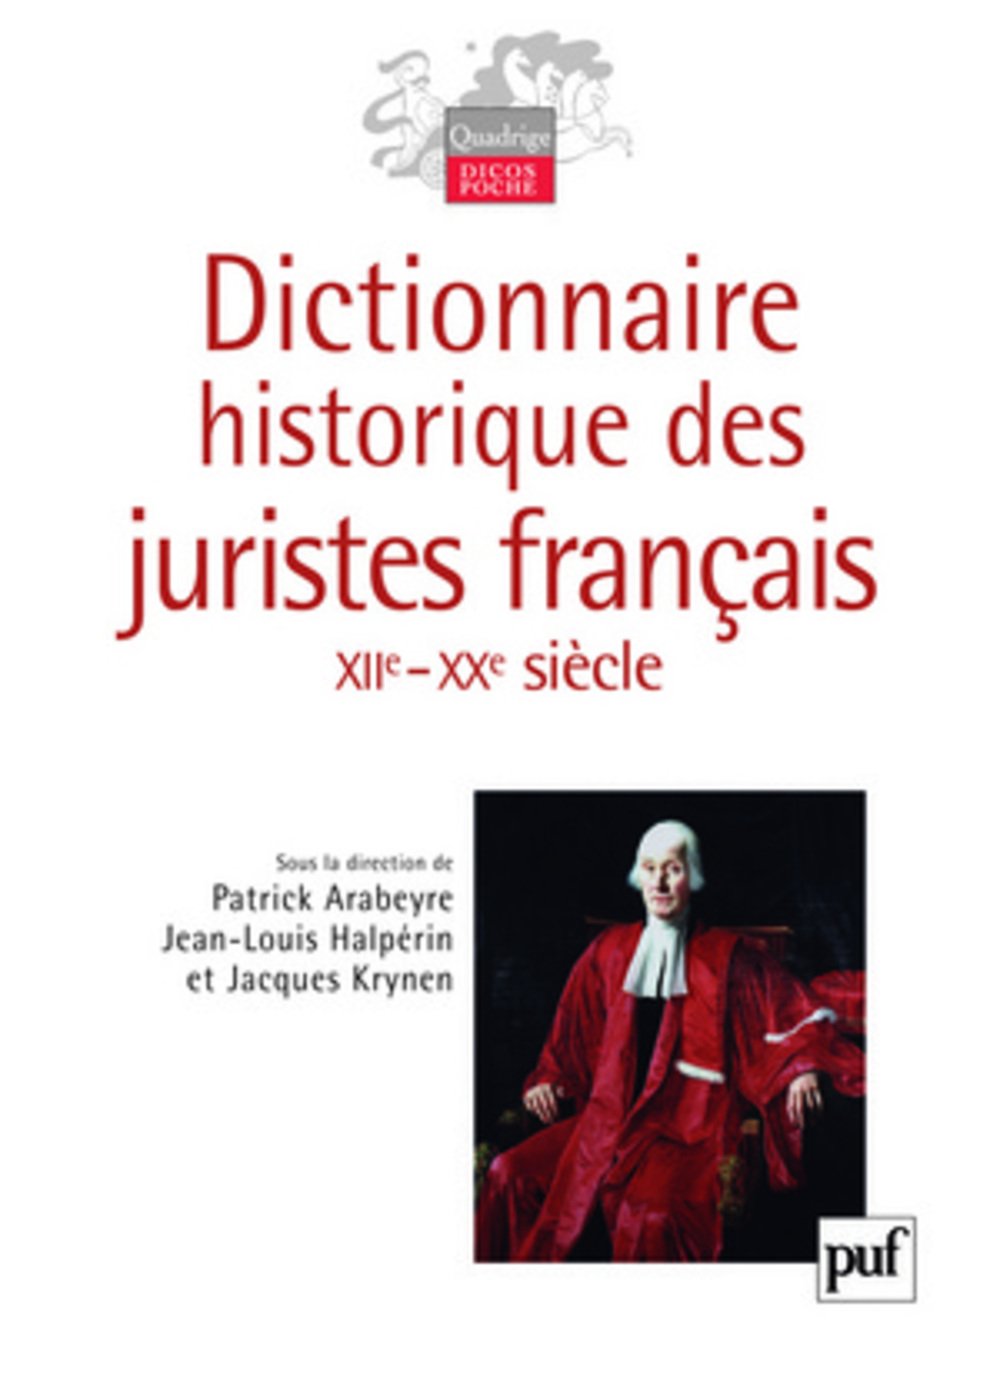 Dictionnaire historique des juristes français (XIIe-XXe siècle), 2007.